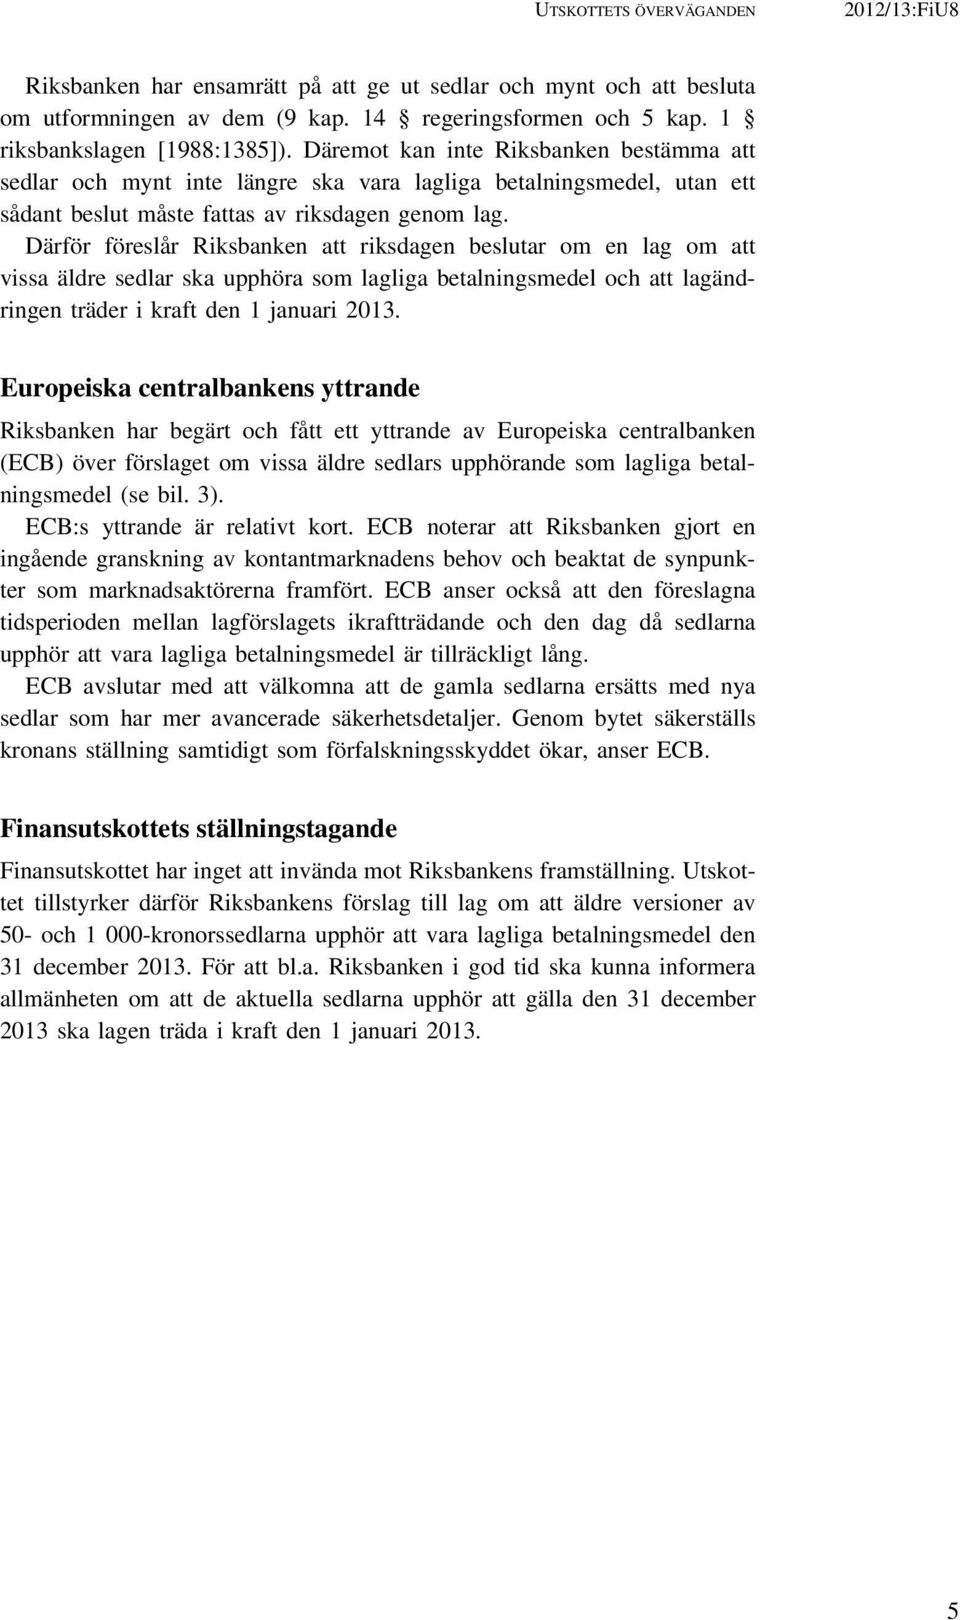 Därför föreslår Riksbanken att riksdagen beslutar om en lag om att vissa äldre sedlar ska upphöra som lagliga betalningsmedel och att lagändringen träder i kraft den 1 januari 2013.